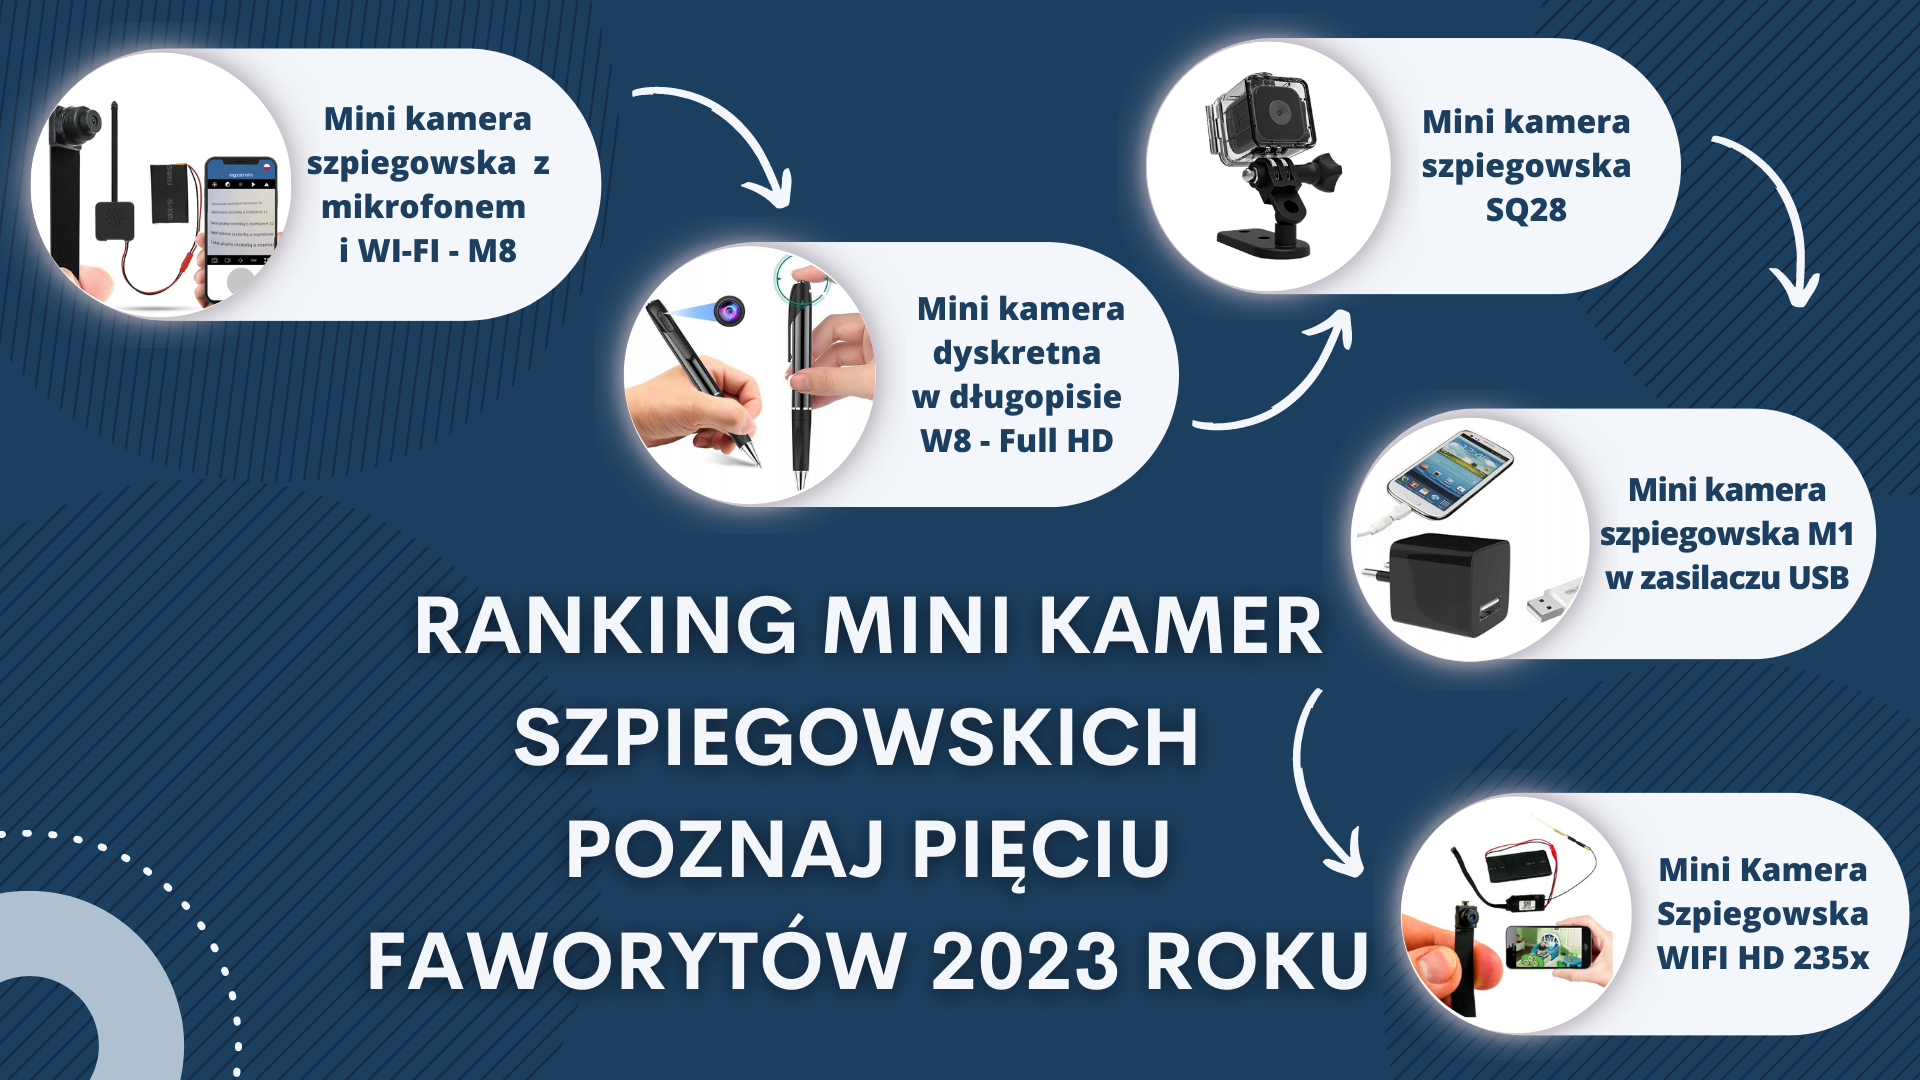 Ranking mini kamer szpiegowskich - Poznaj pięciu faworytów 2023 roku